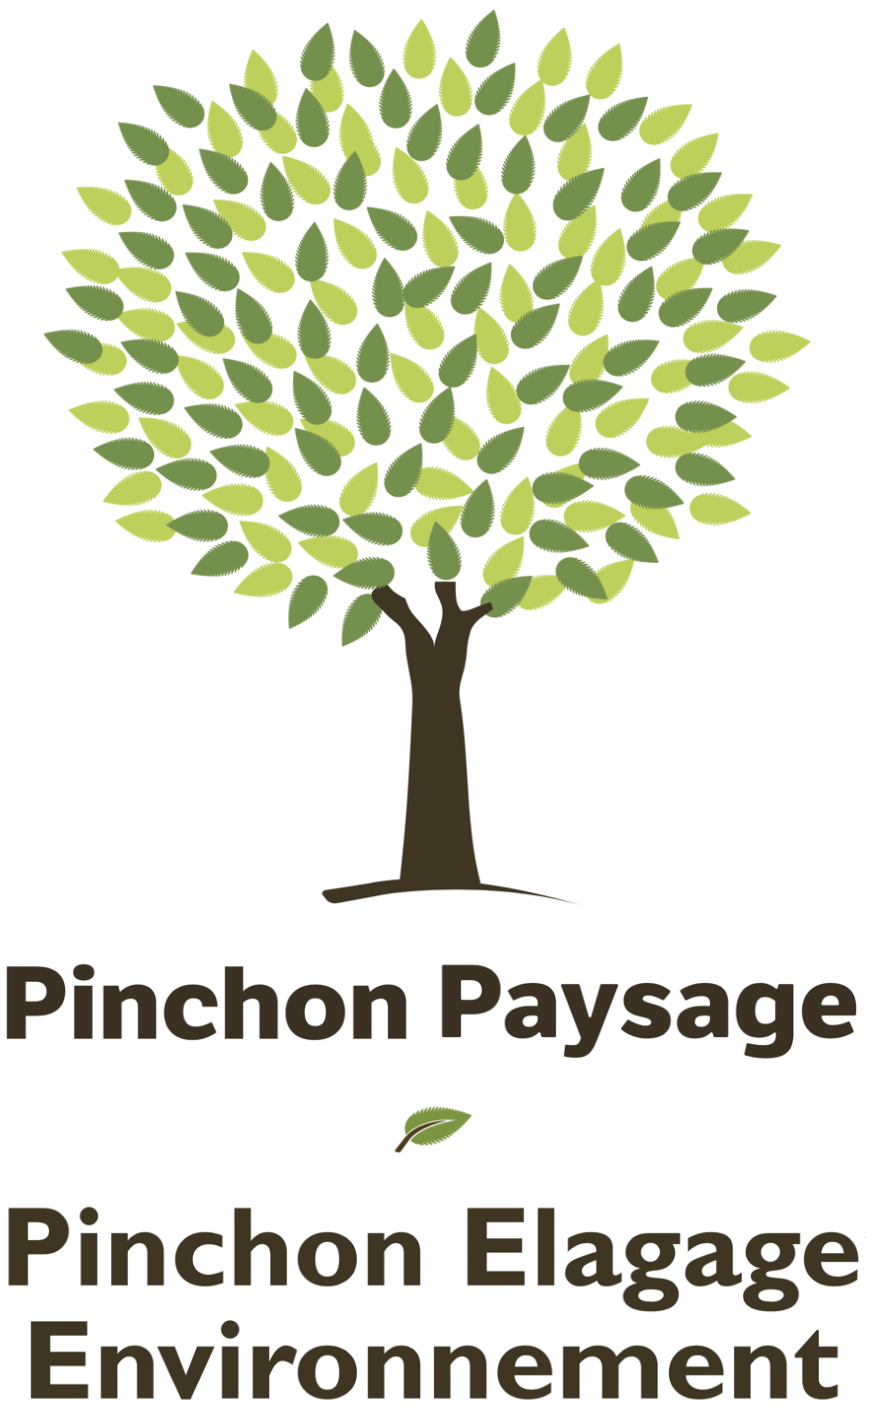 Pinchon Paysage - Pinchon Elagage Environnement